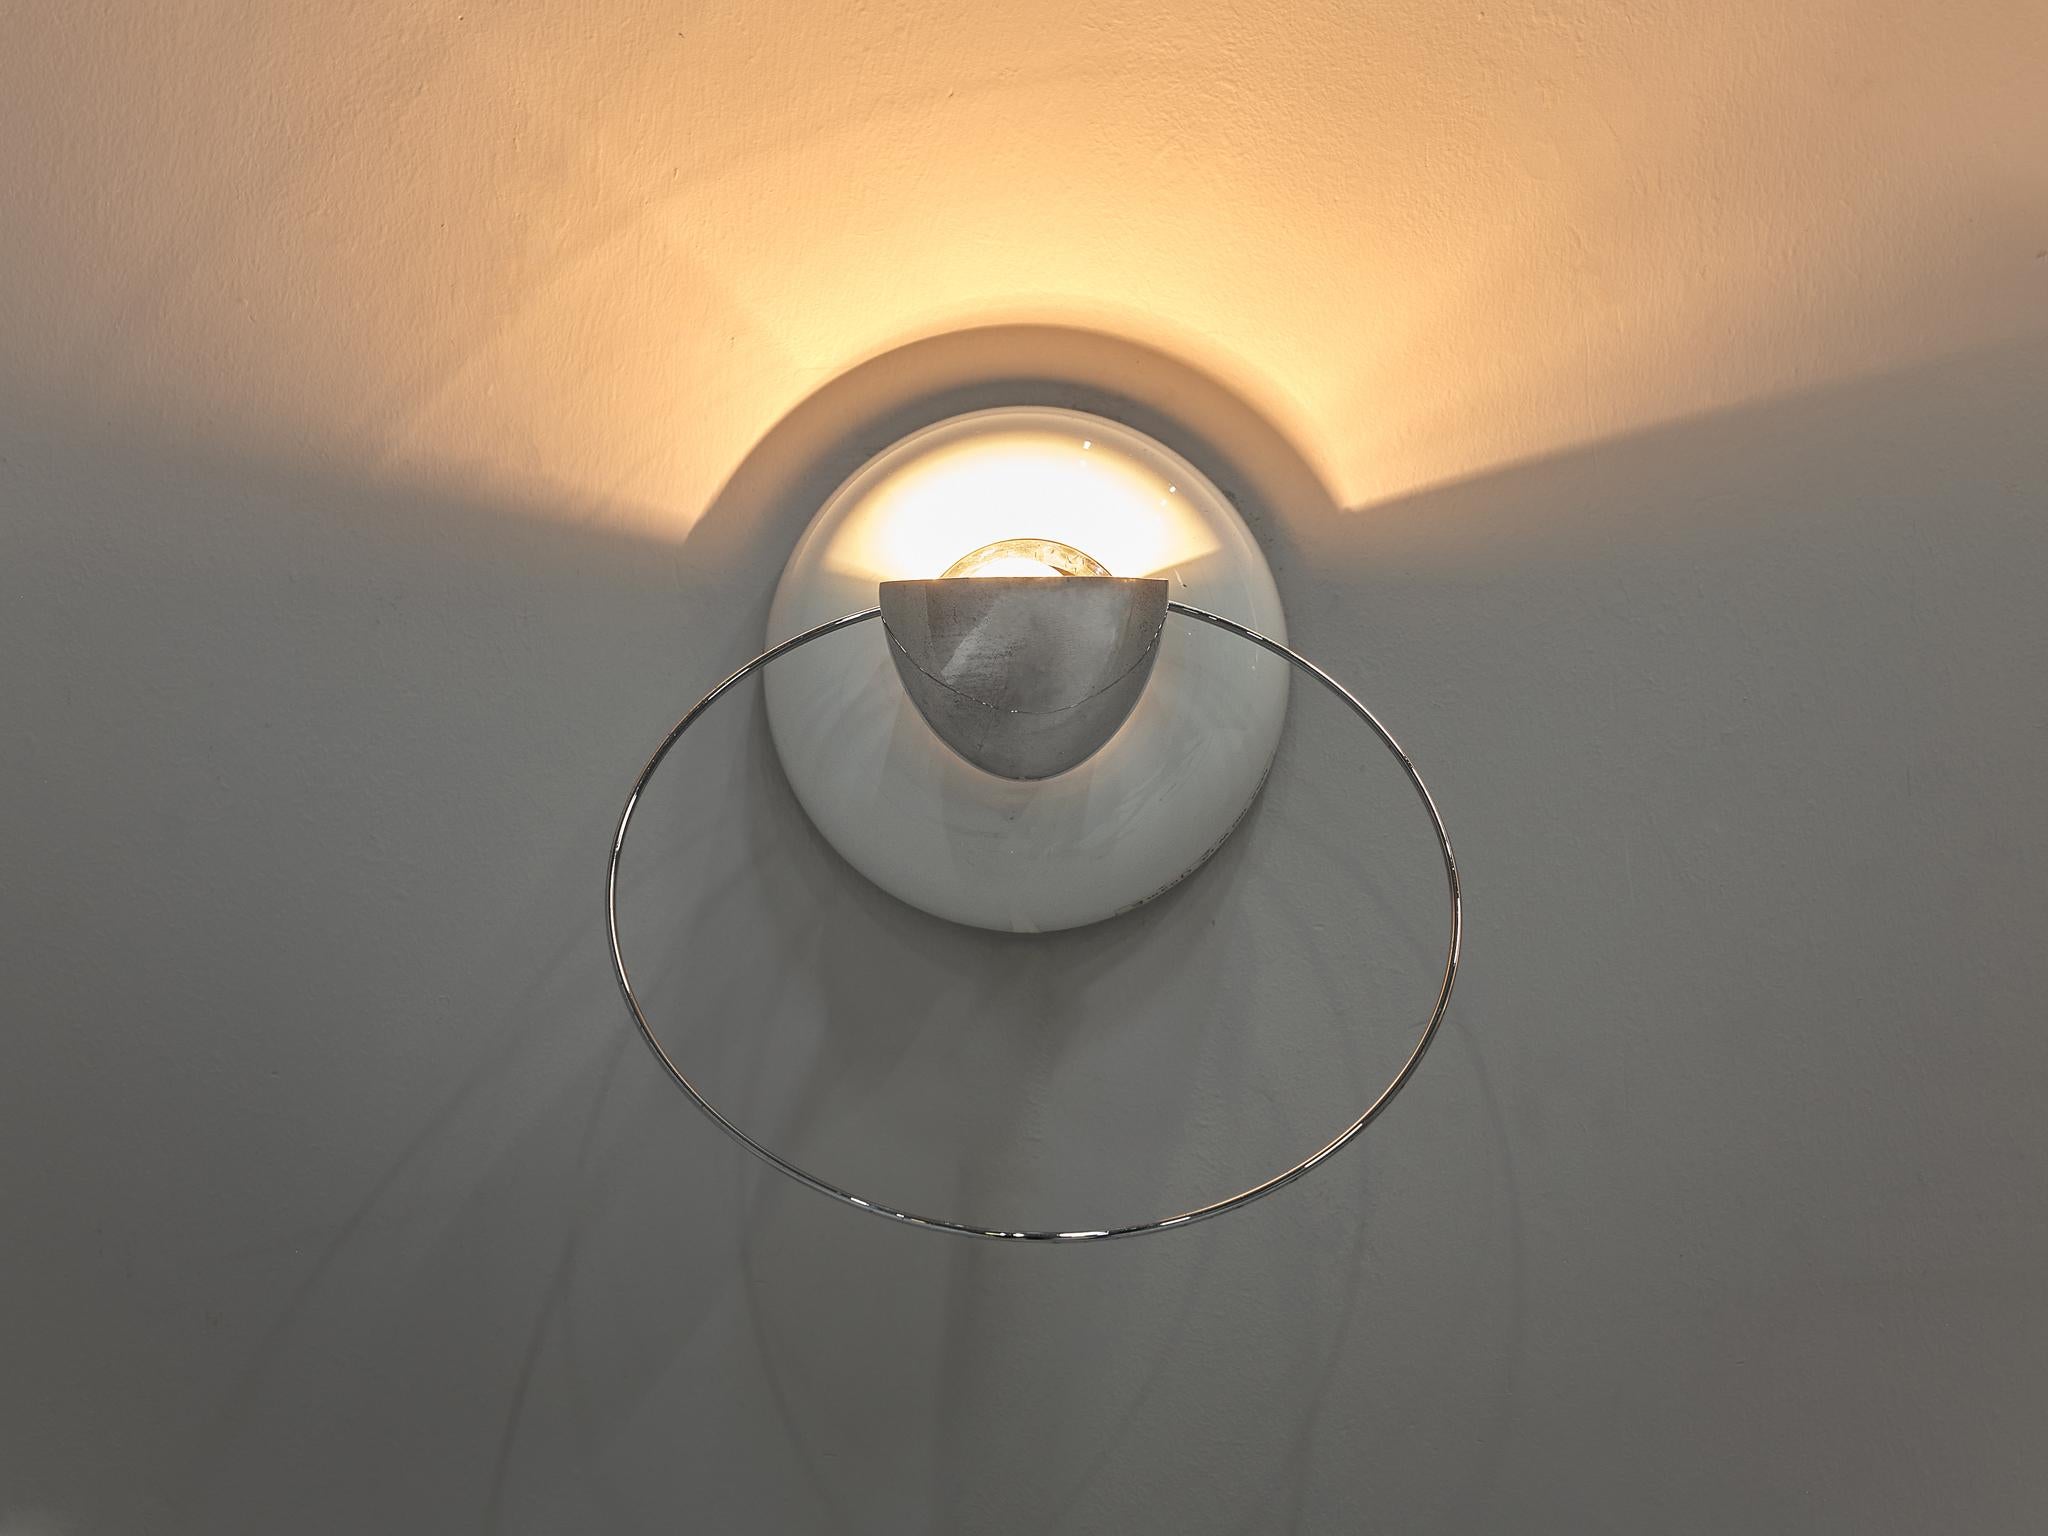 Italian Achille Castiglioni for Flos ‘Bi Bip’ Wall Lamp 